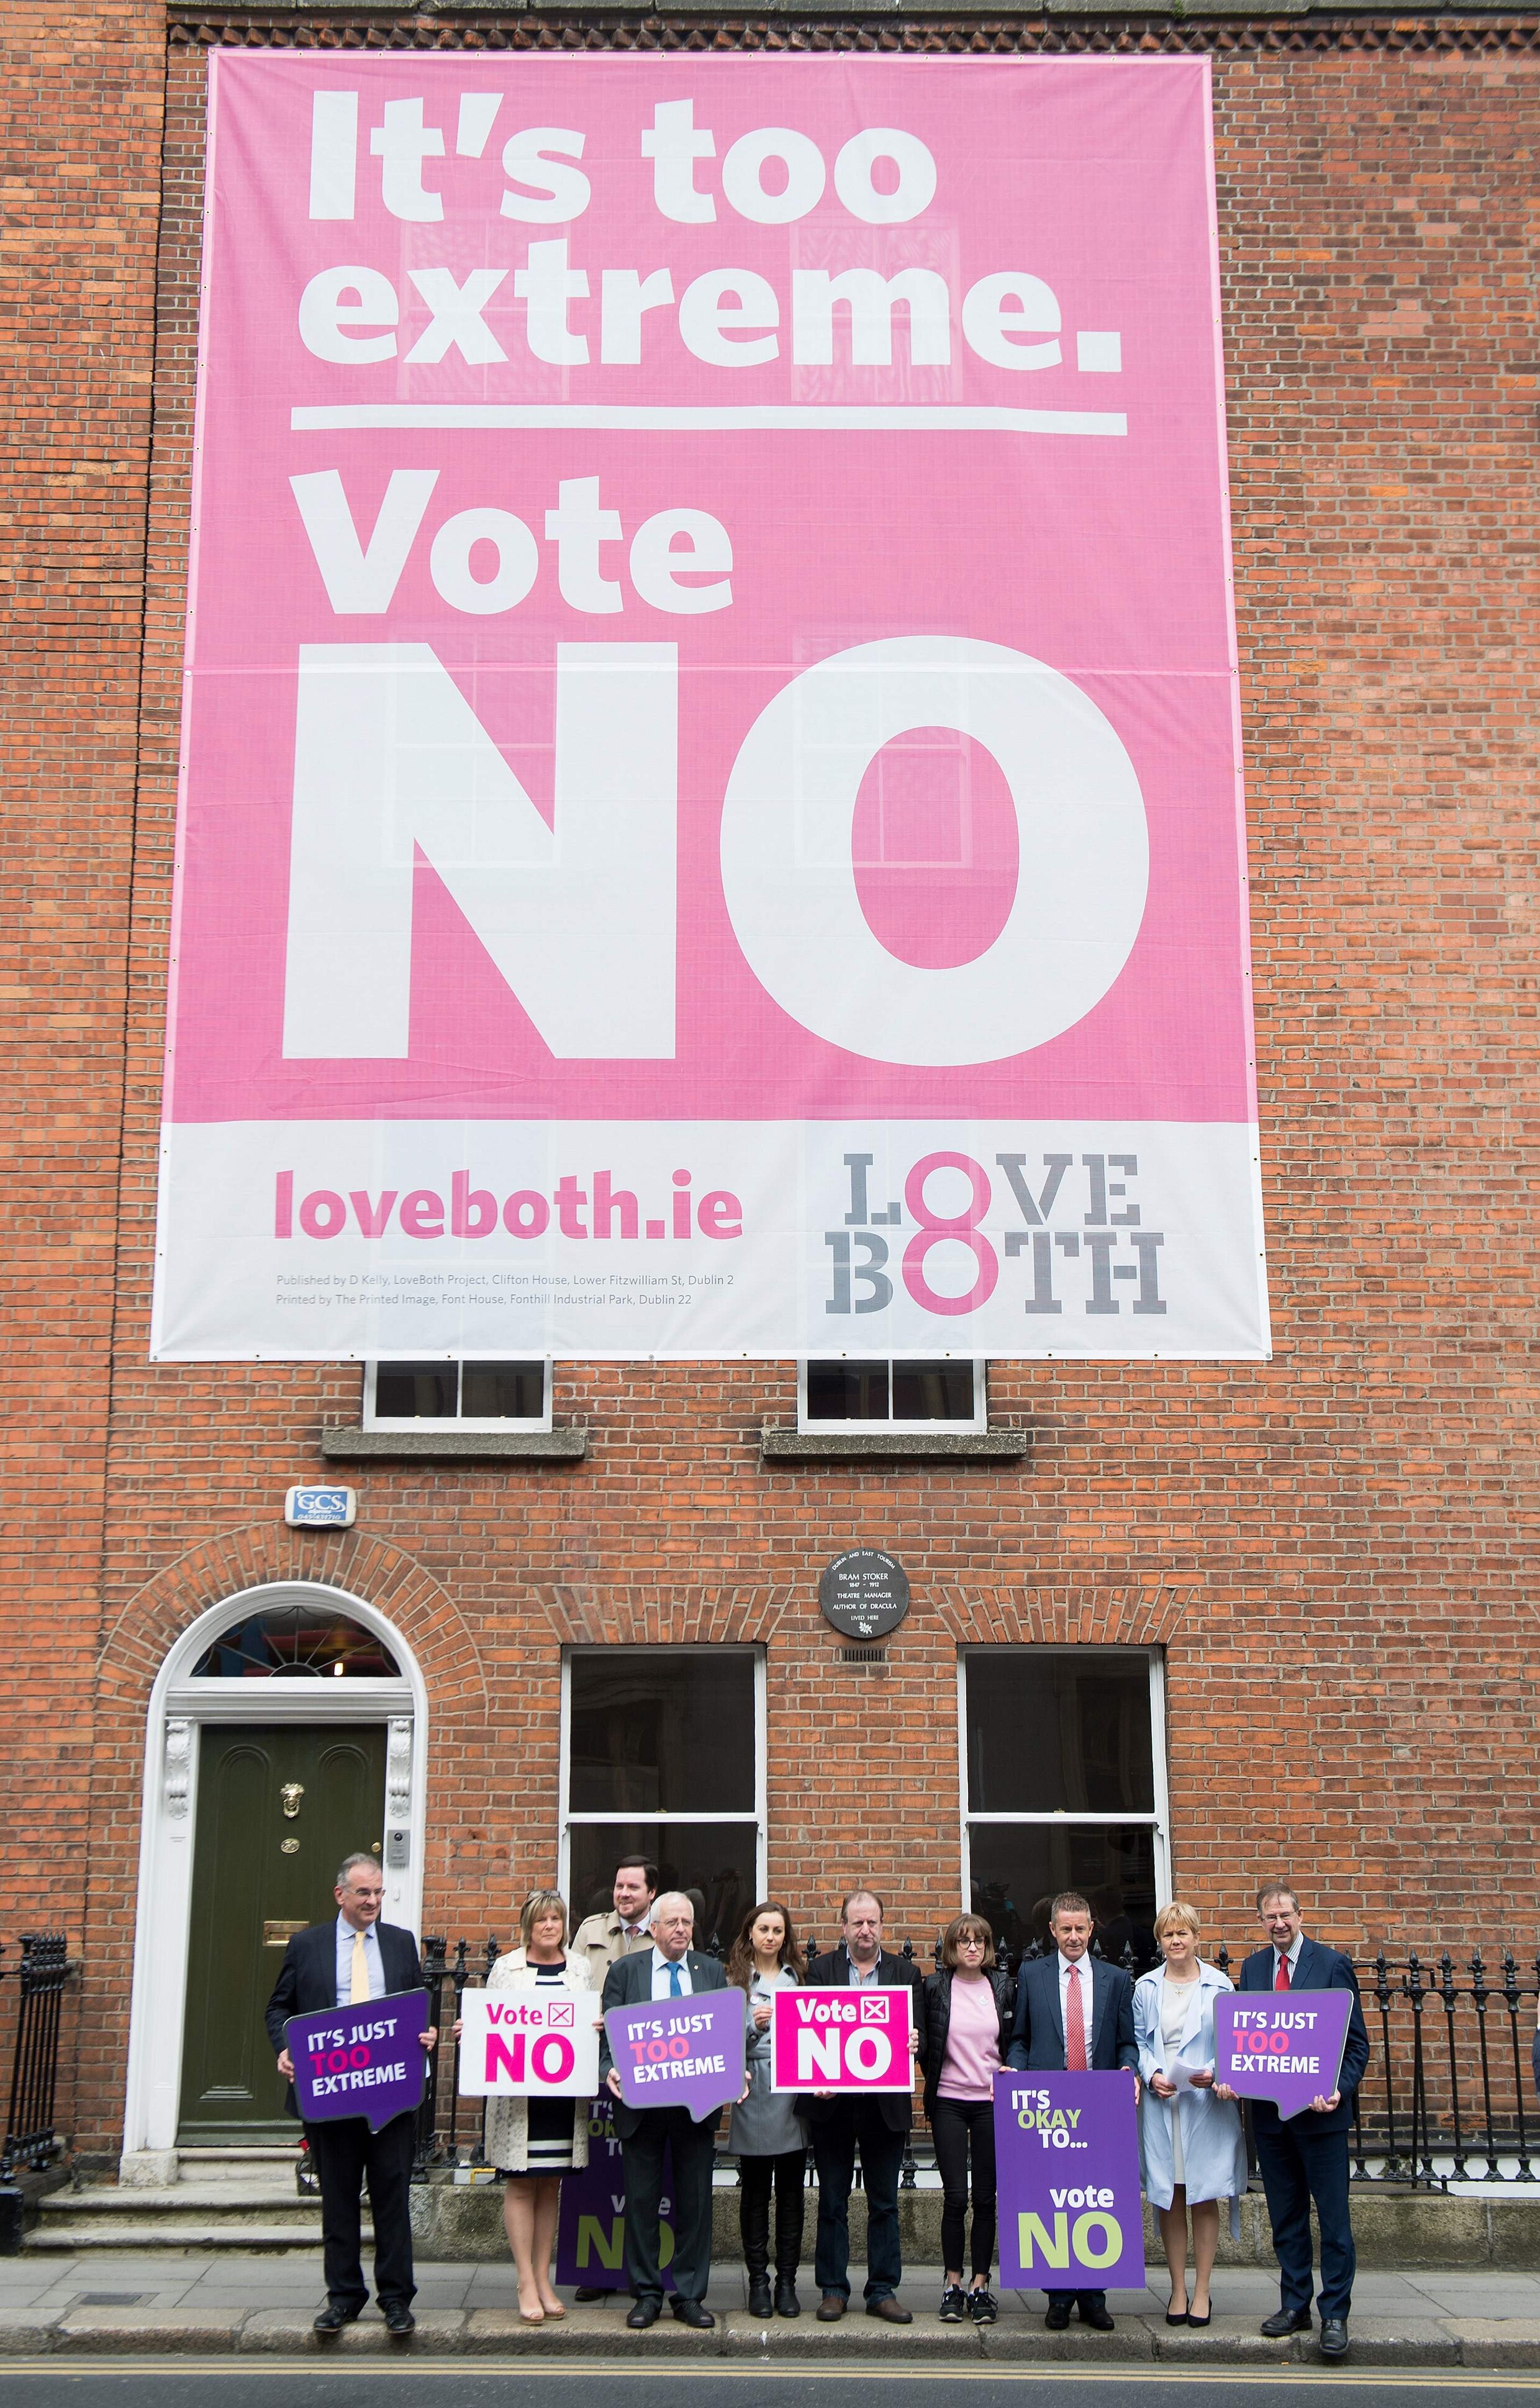 Spanning heerst op straat in Ierland, dat vandaag voor of tegen het recht op abortus stemt